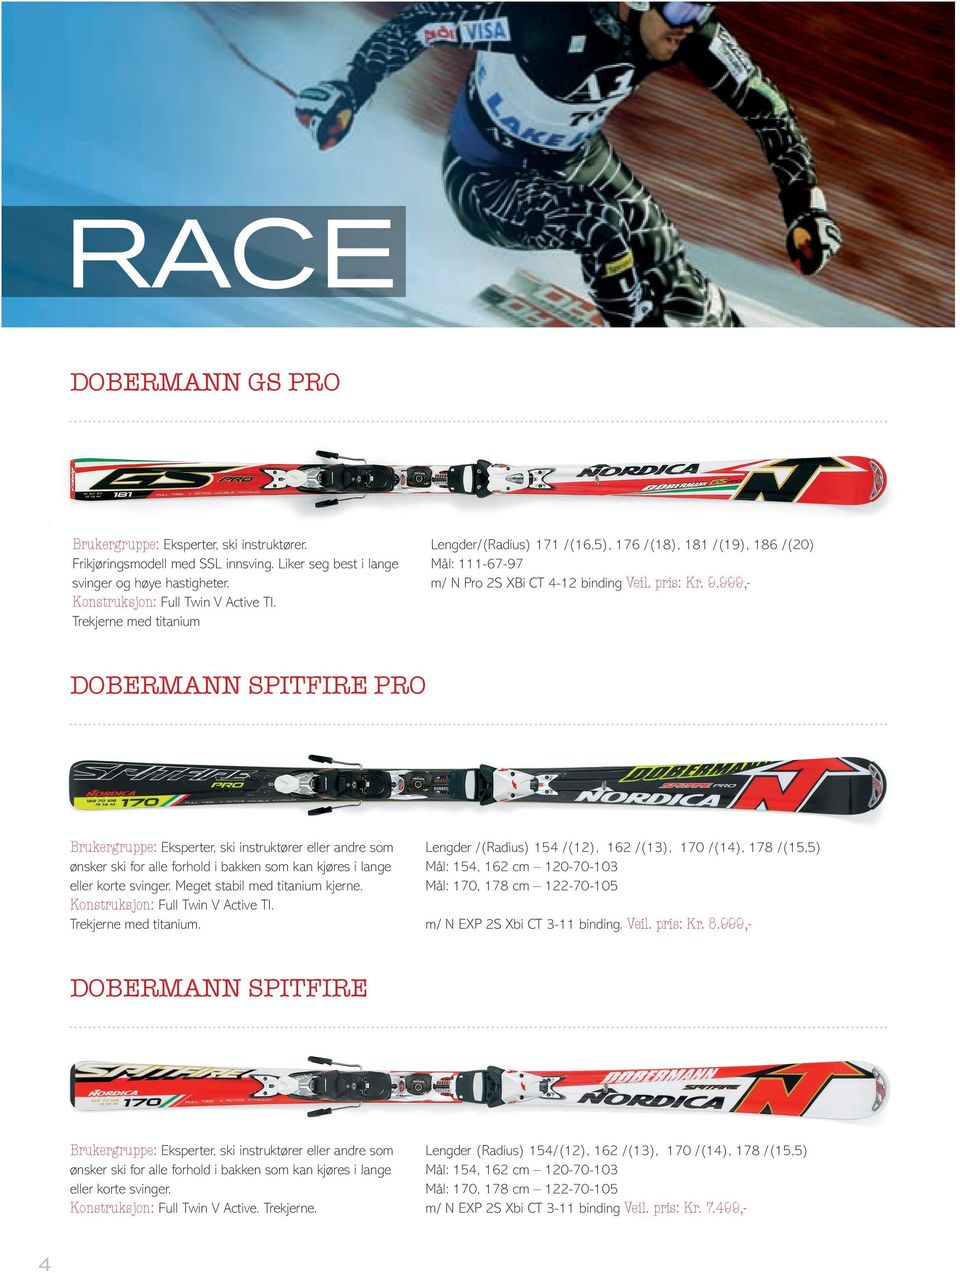 999,- DOBERMANN SPITFIRE PRO Brukergruppe: Eksperter, ski instruktører eller andre som ønsker ski for alle forhold i bakken som kan kjøres i lange eller korte svinger.